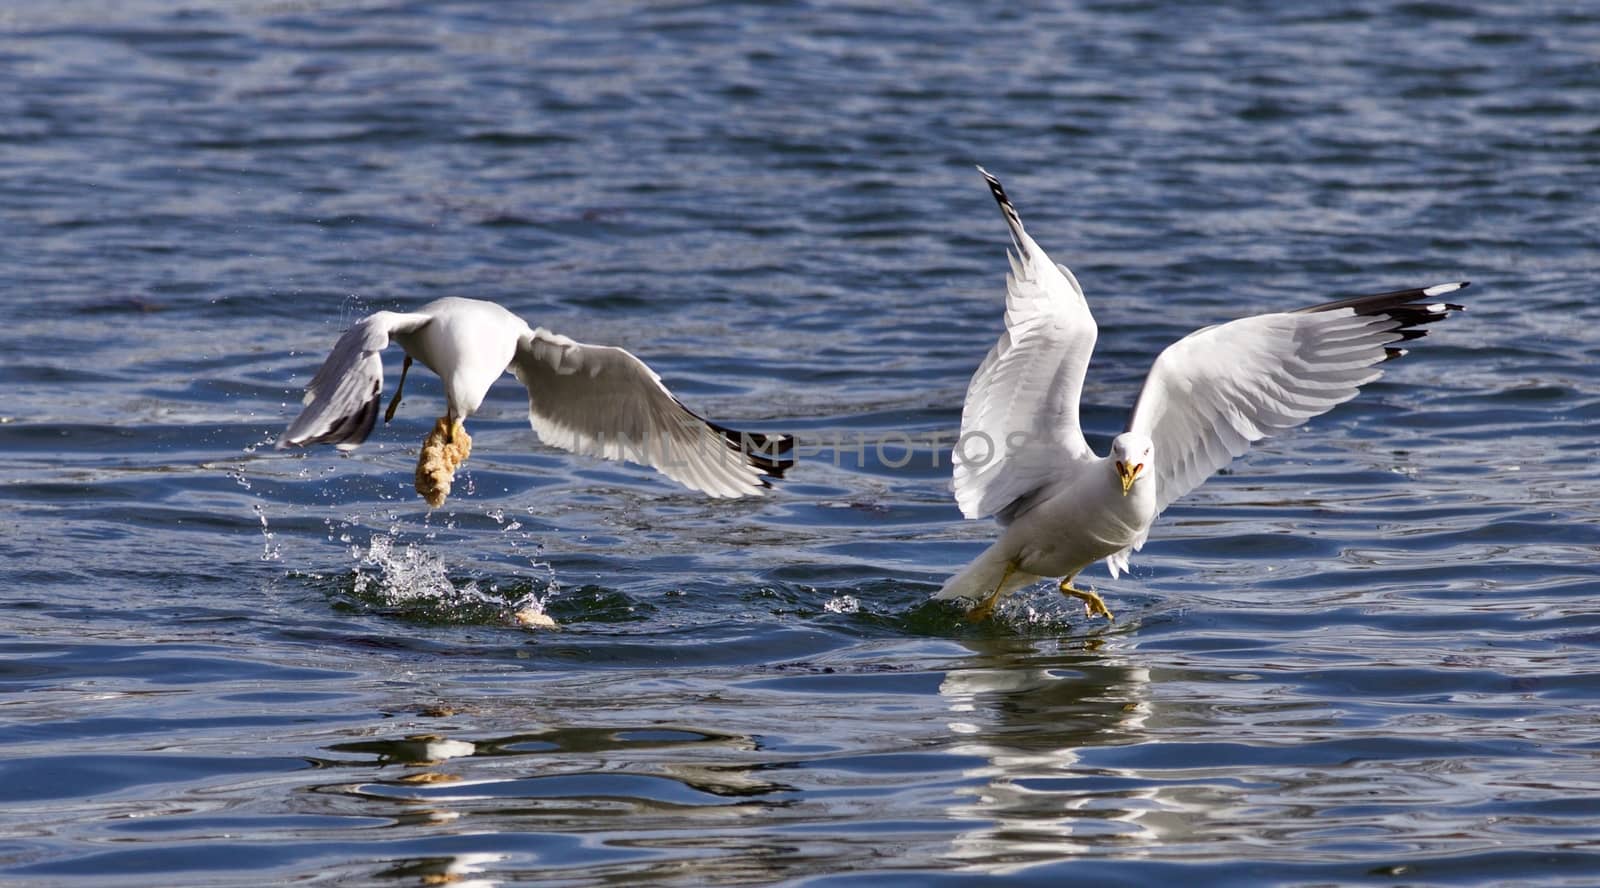 Beautiful photo of two gulls on the lake